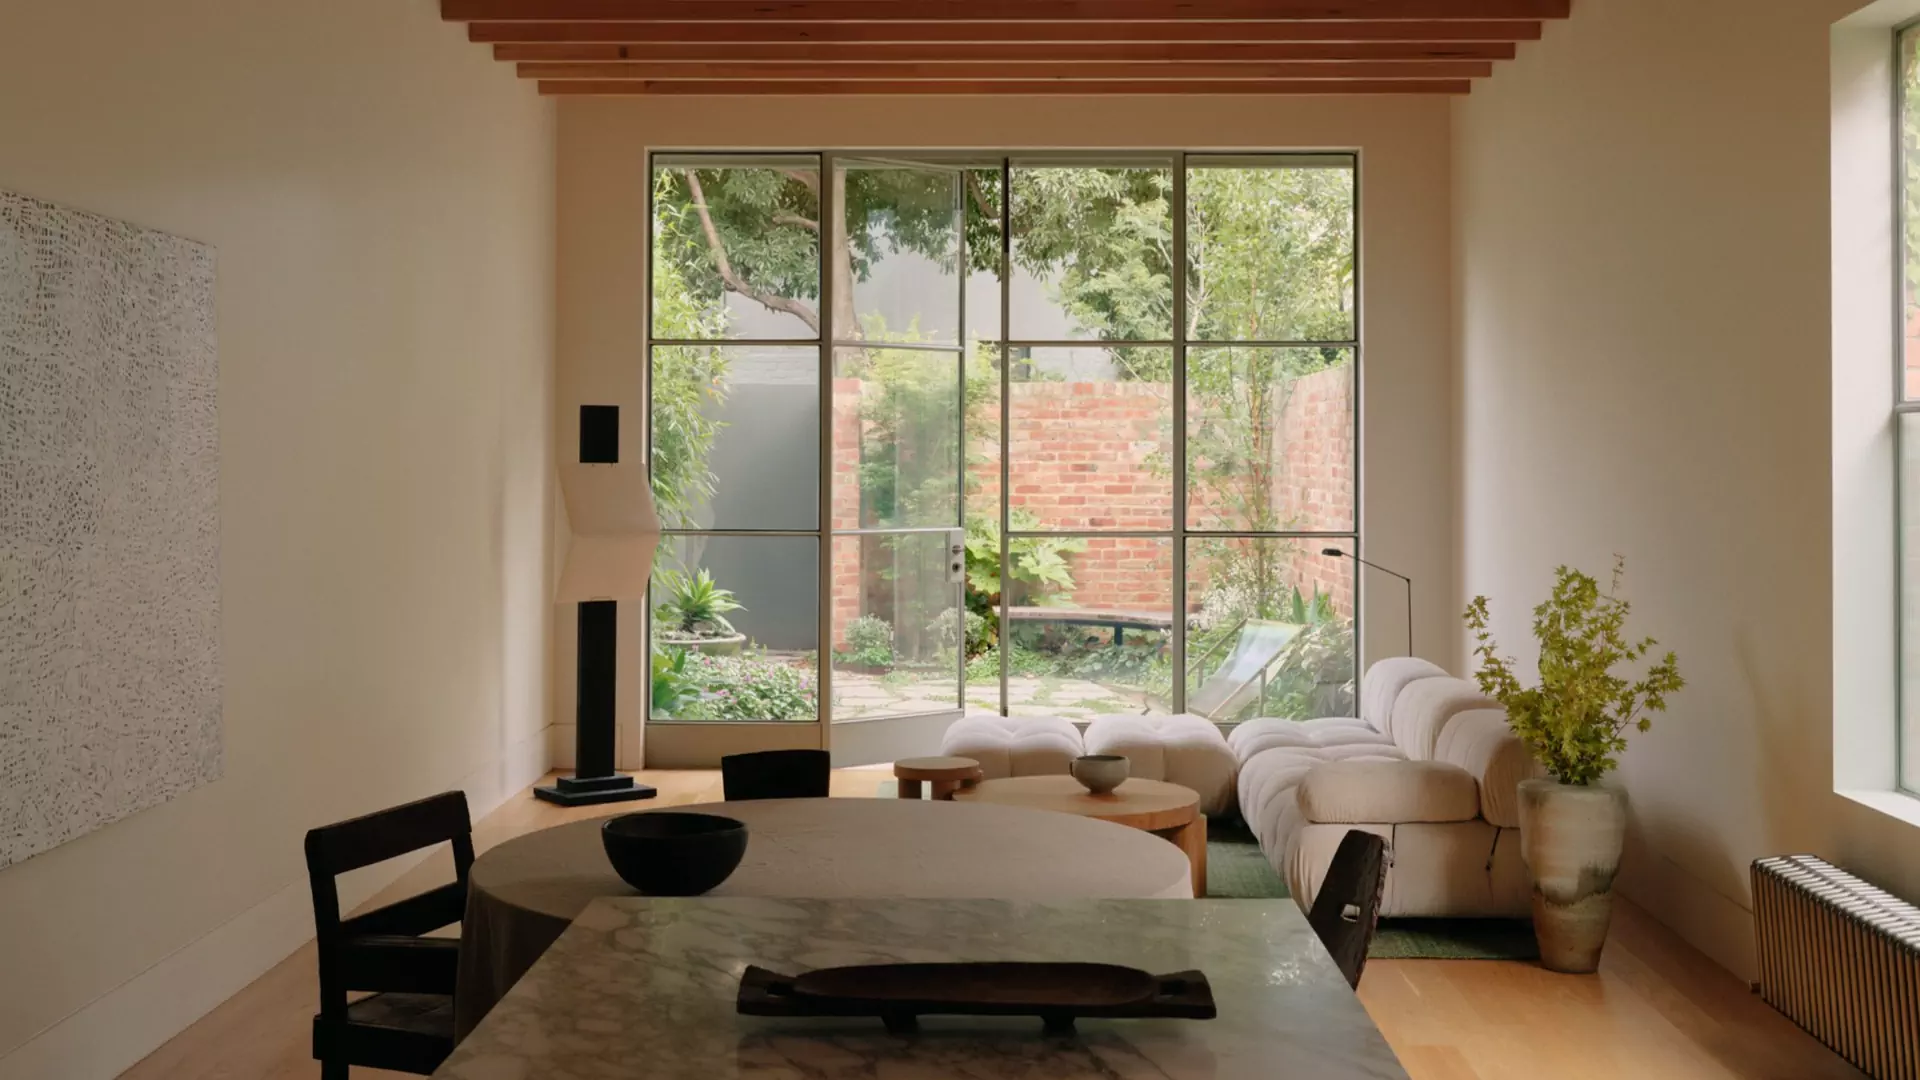 Безупречная симметрия в интерьере частного дома в Мельбурне — проект Оливера дю Пюи